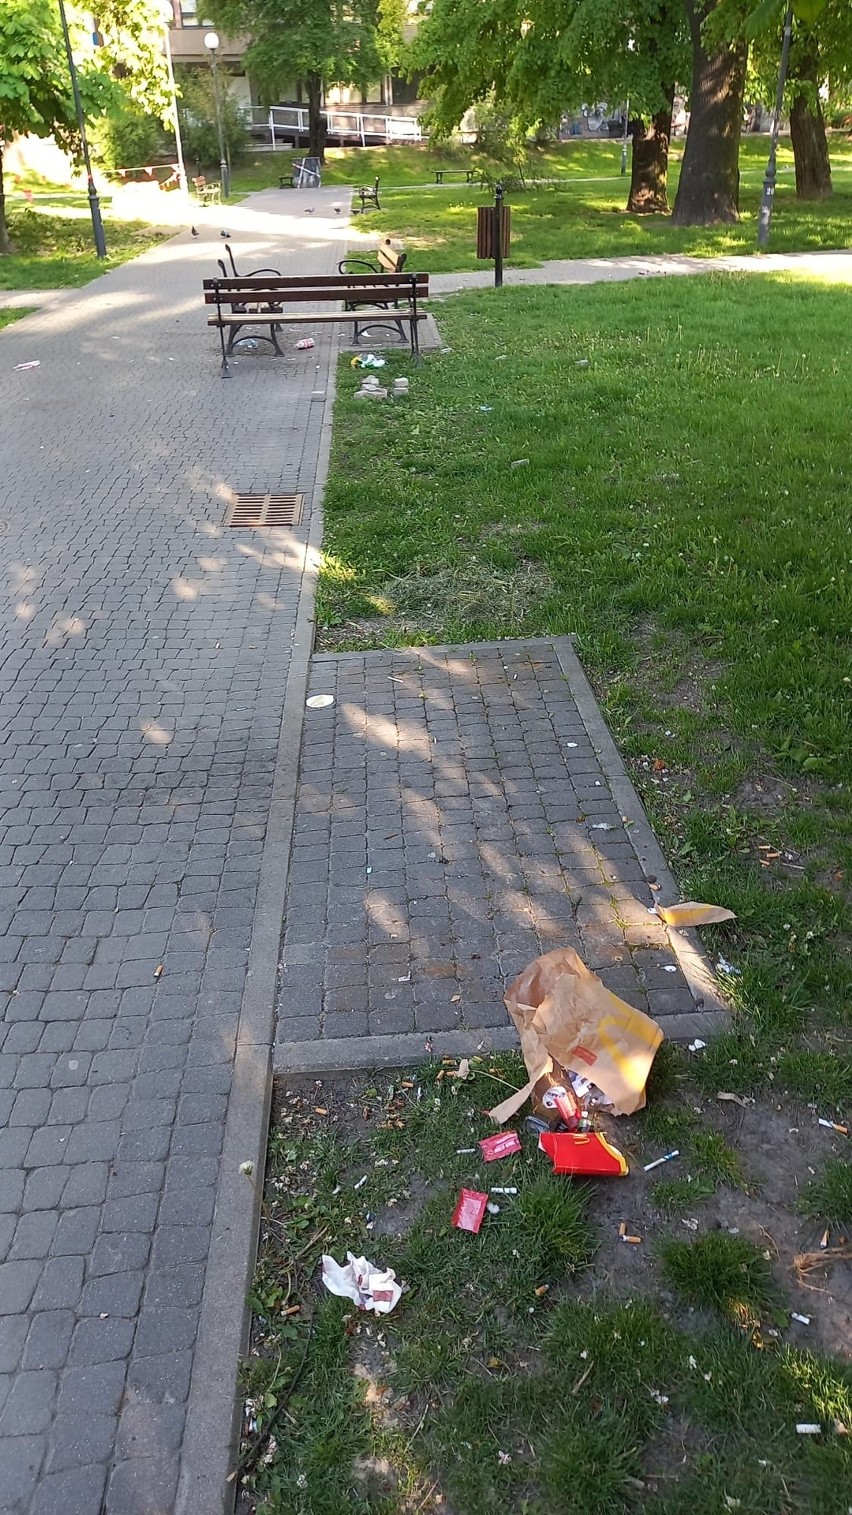 Libacje na placu Kaczyńskiego: młodzież pije i zakłóca spokój, służby są bezradne. Zdjęcia